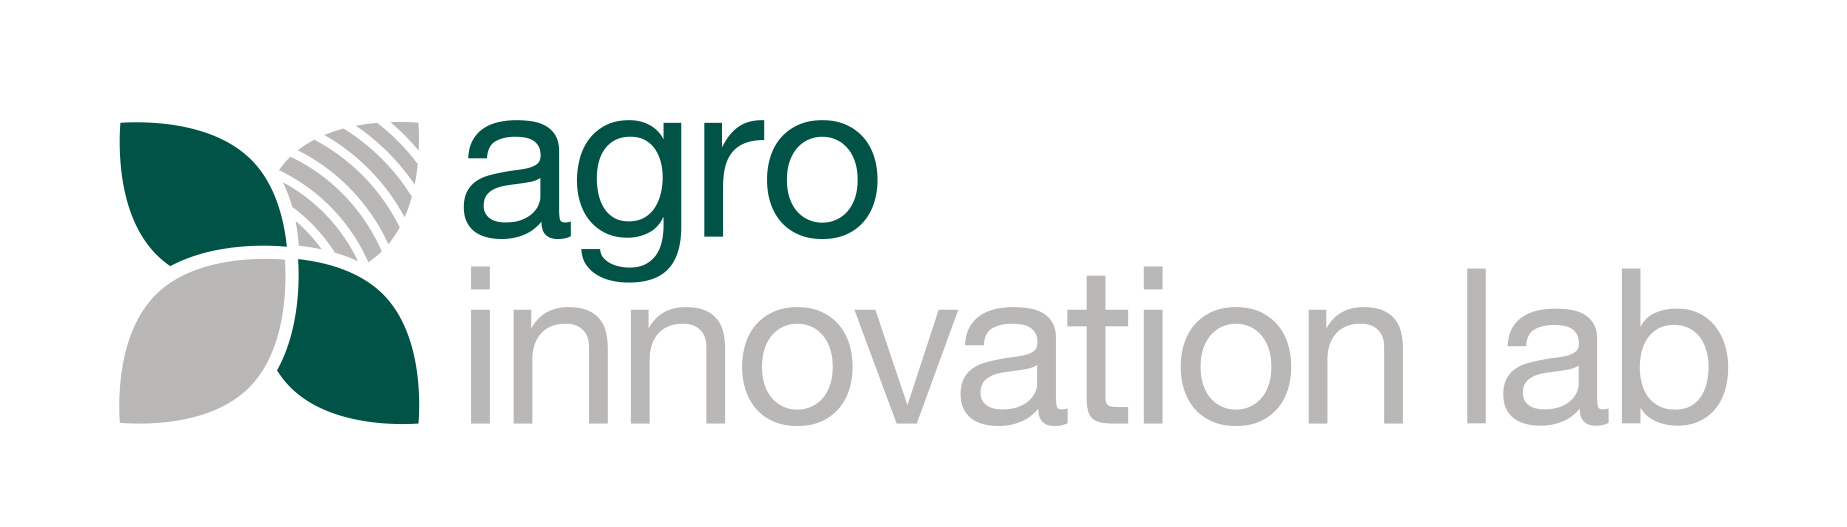 Agro Innovation Lab logo